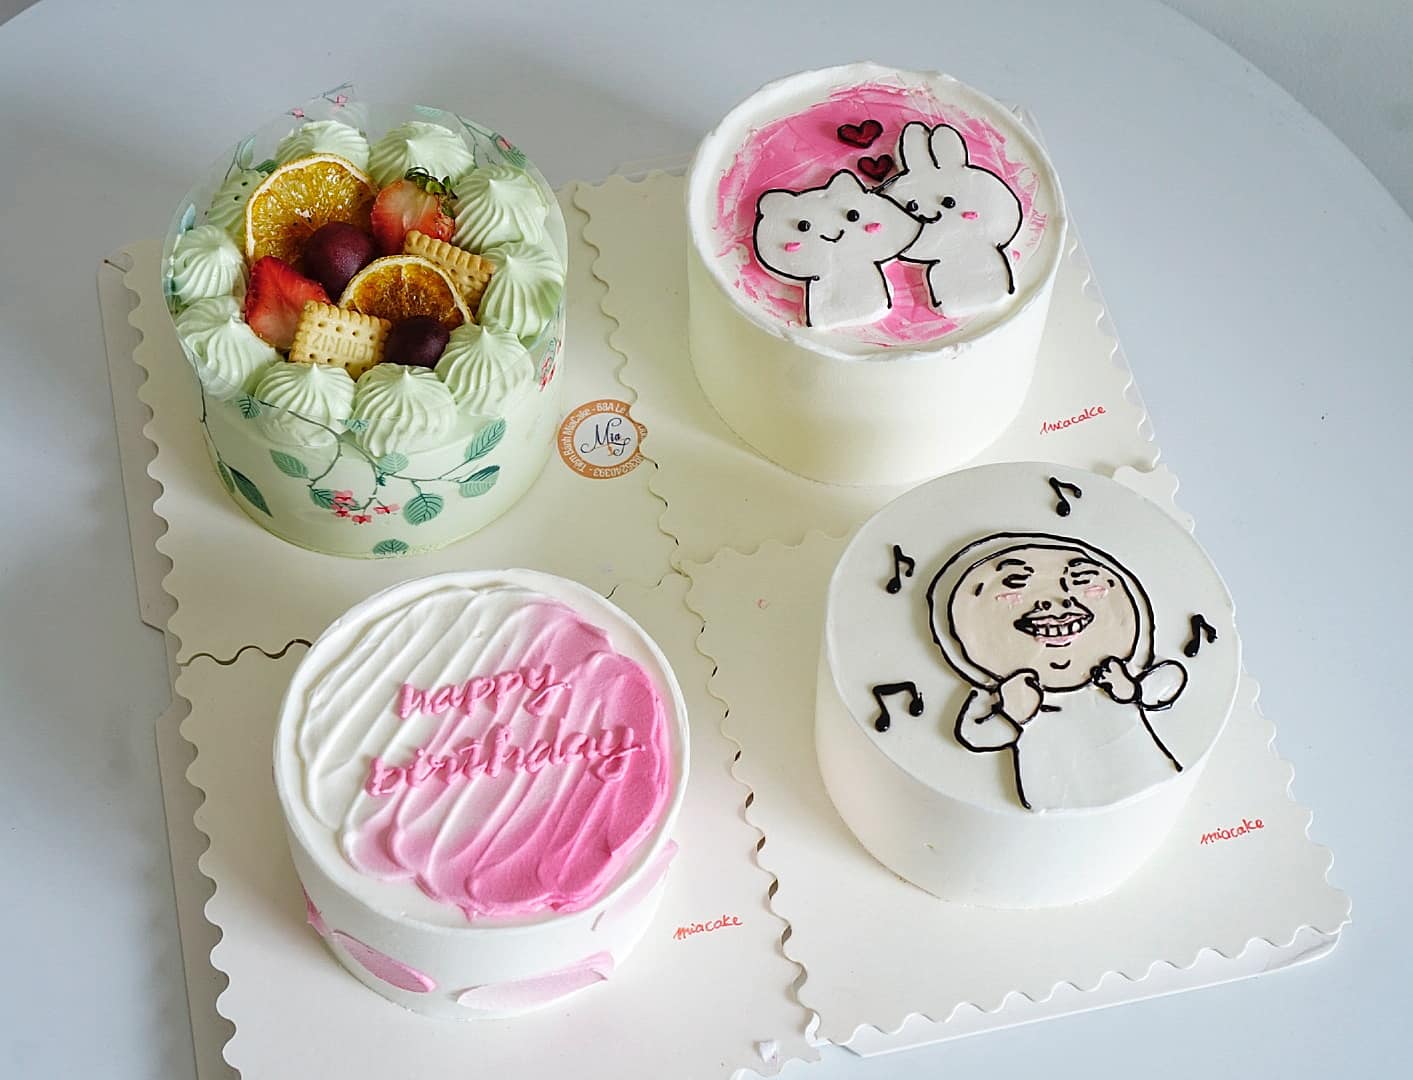 Tổng hợp những mẫu bánh kem siêu cute trong dịp sinh nhật